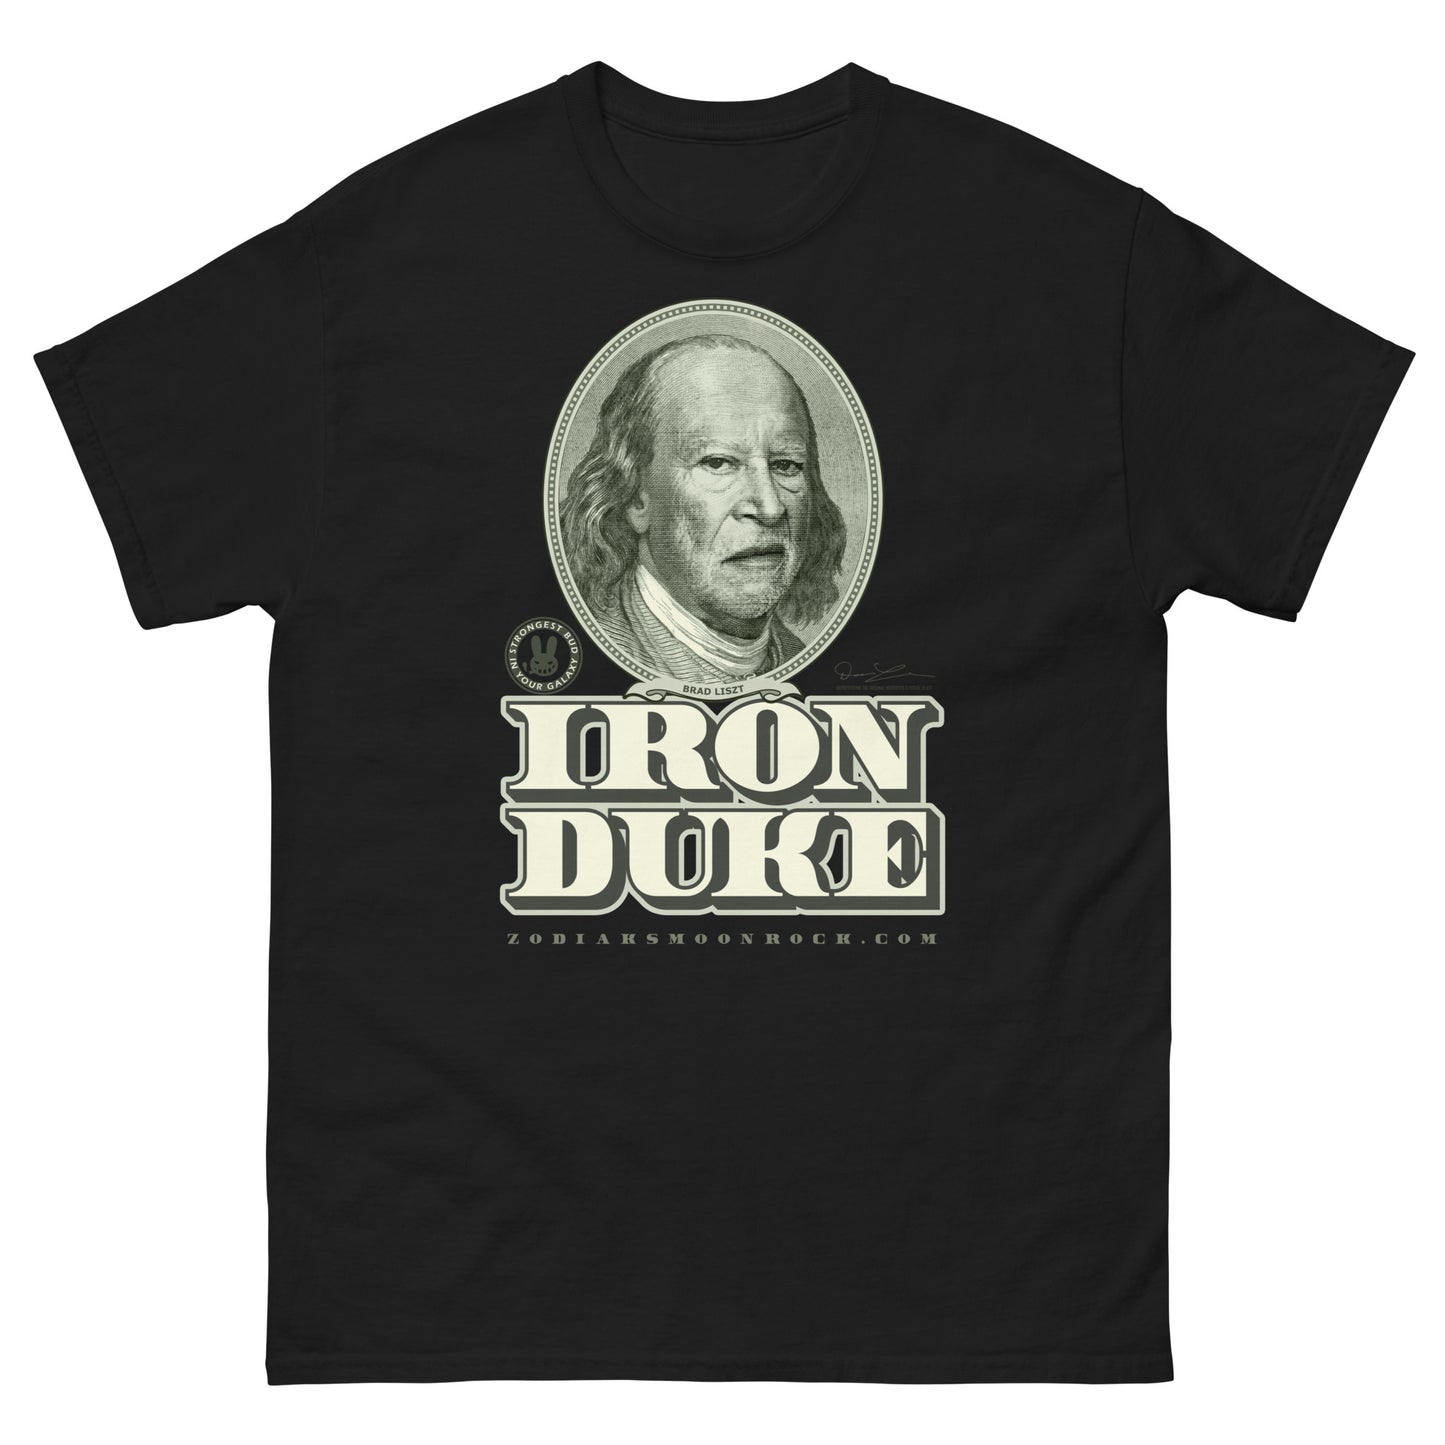 Iron Duke Tee by Dr. Zodiak's Moonrock